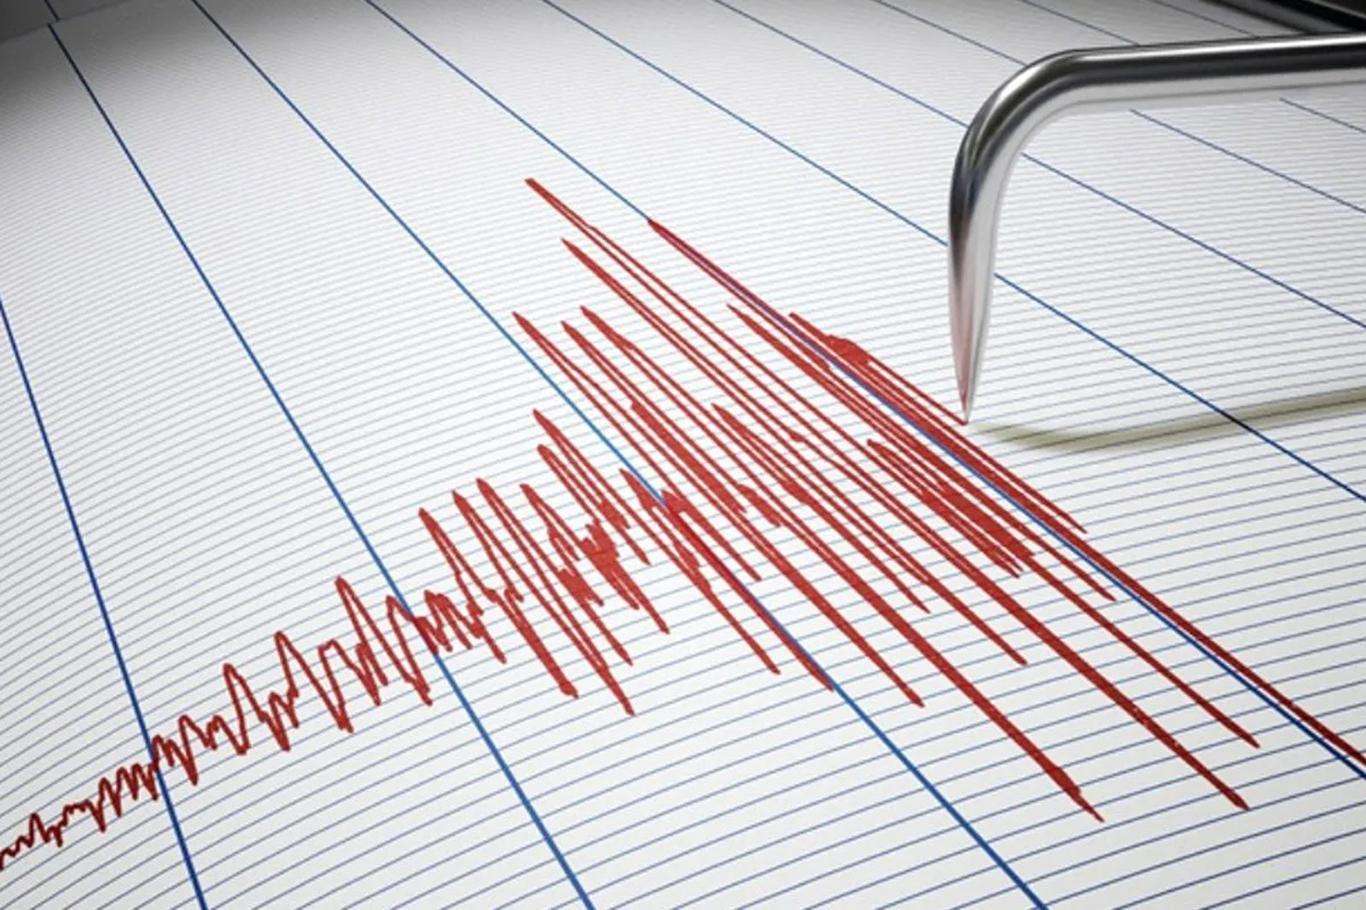 A 4.0 magnitude earthquake occurs in Aegean Sea